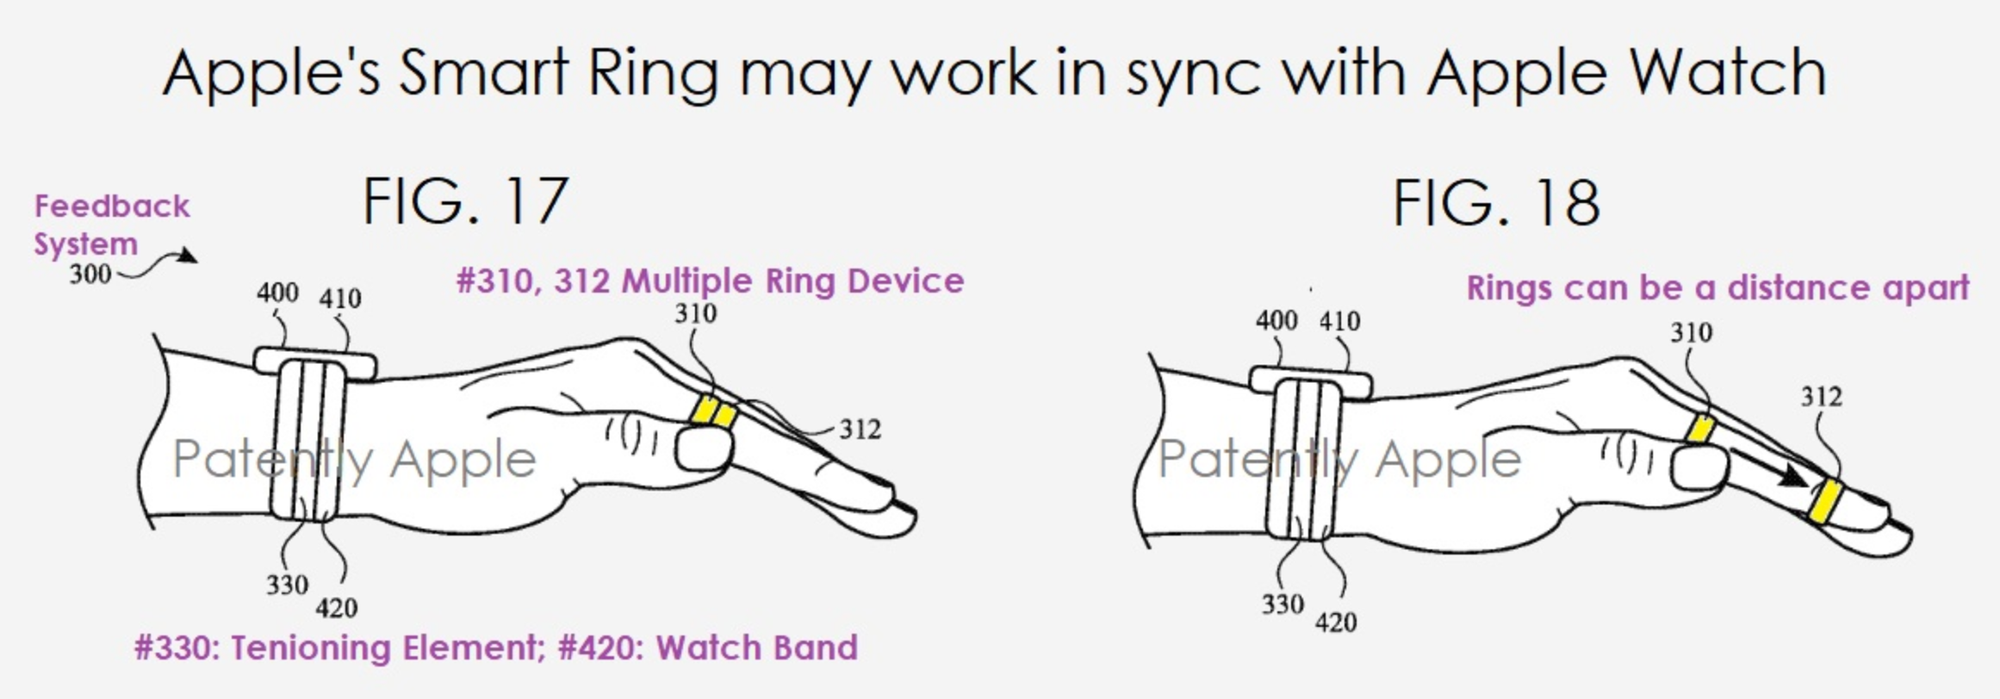 智能指环与Apple Watch 同步